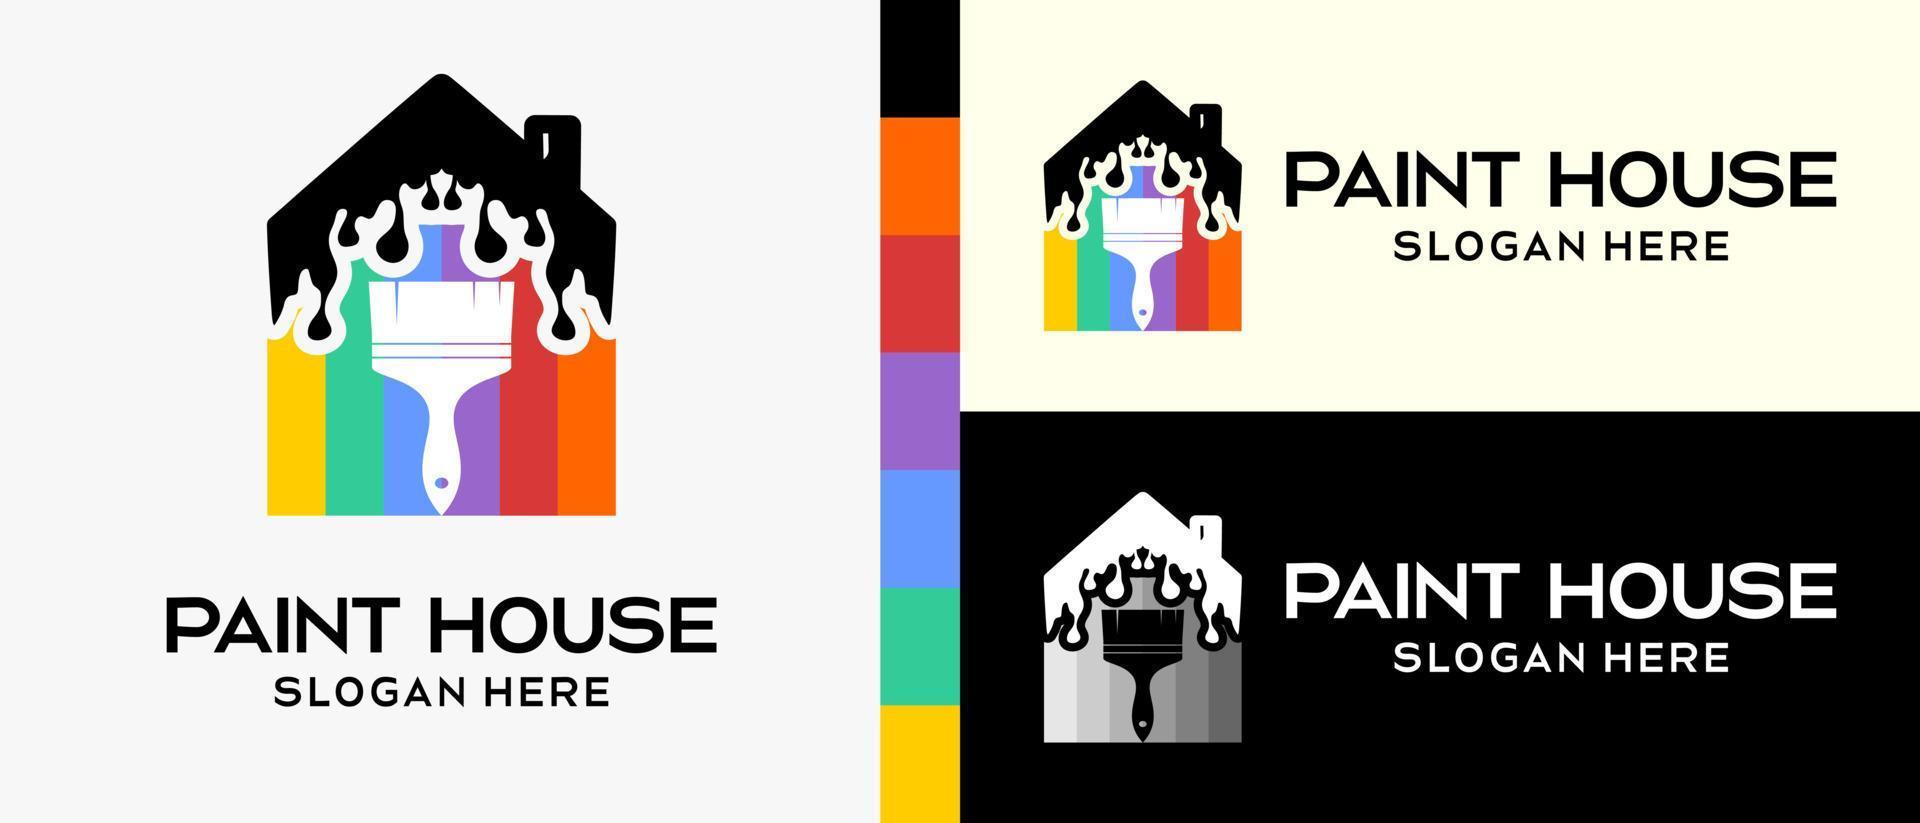 modèle de conception de logo de peinture de bâtiment cool. pinceau et maison en silhouette avec concept de couleur arc-en-ciel. illustration vectorielle d'un logo pour mur ou peinture de bâtiment. vecteur premium